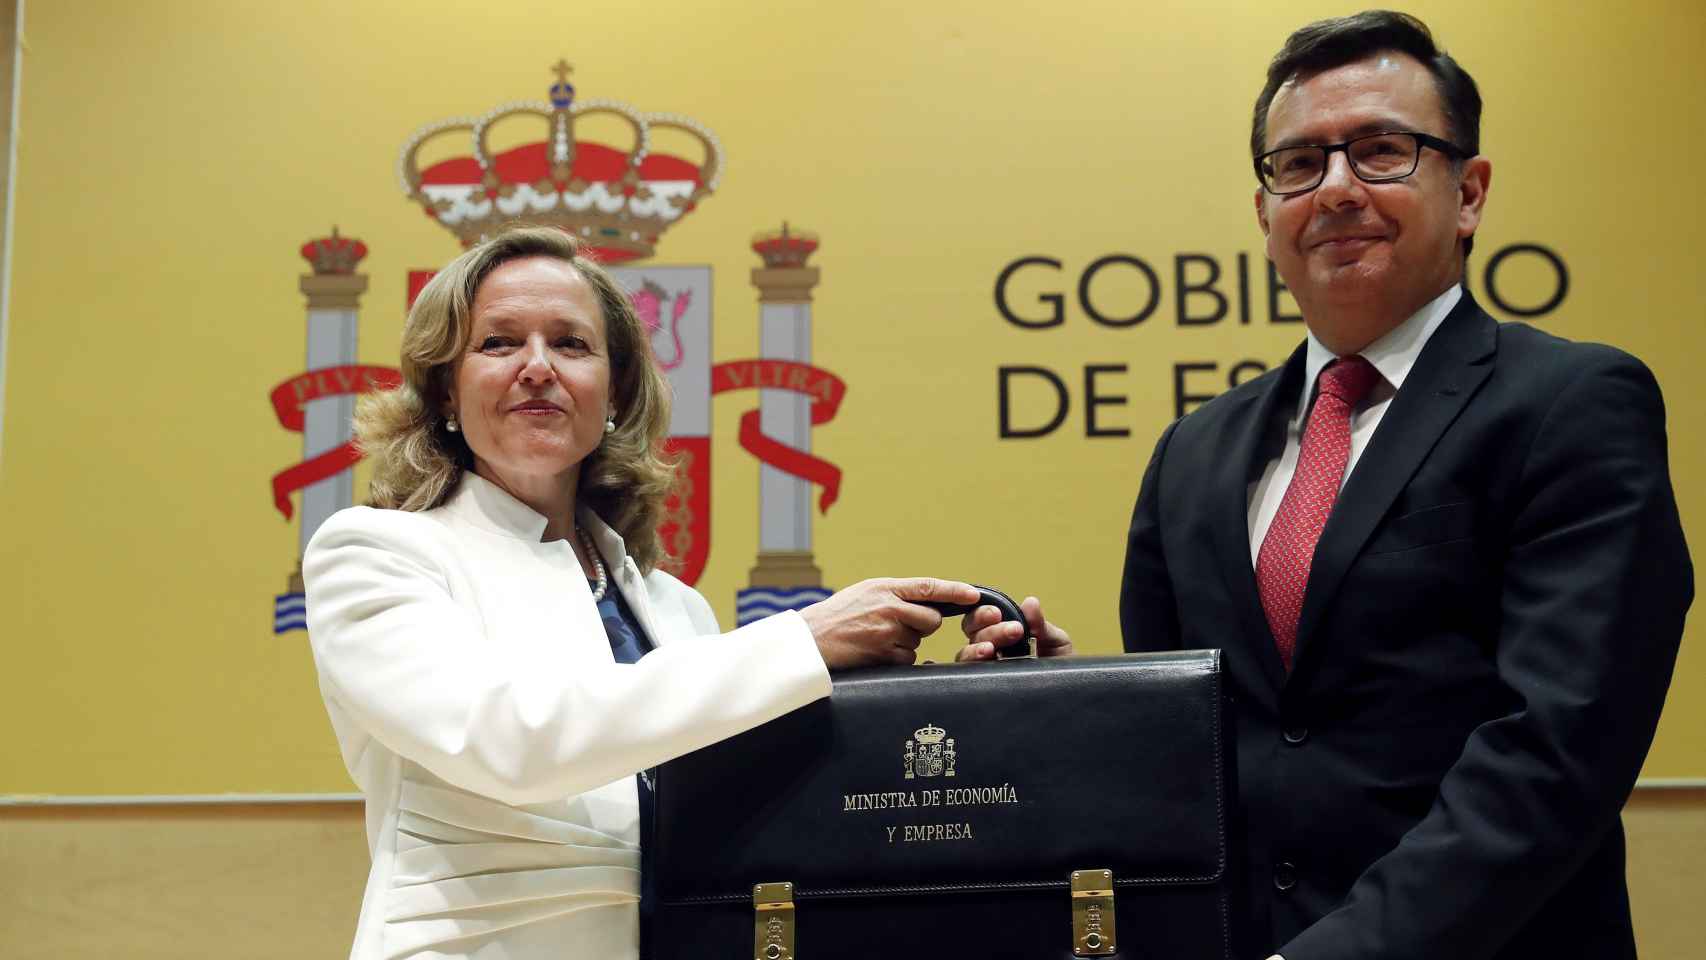 La vicepresidenta Nadia Calviño recibe la cartera de Economía de manos de su antecesor en el cargo, Román Escolano.